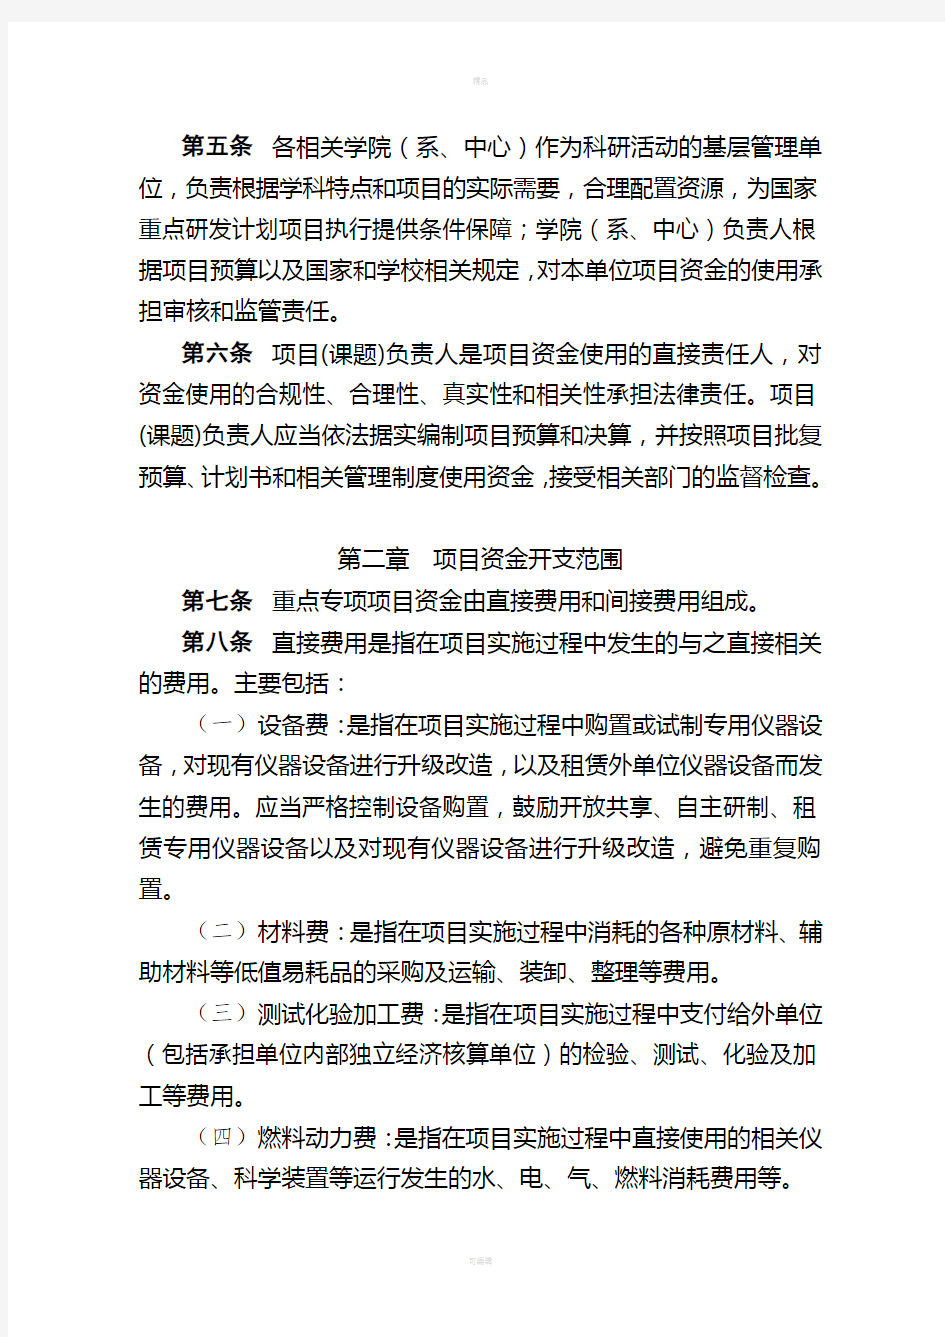 上海大学国家重点研发计划资金管理办法